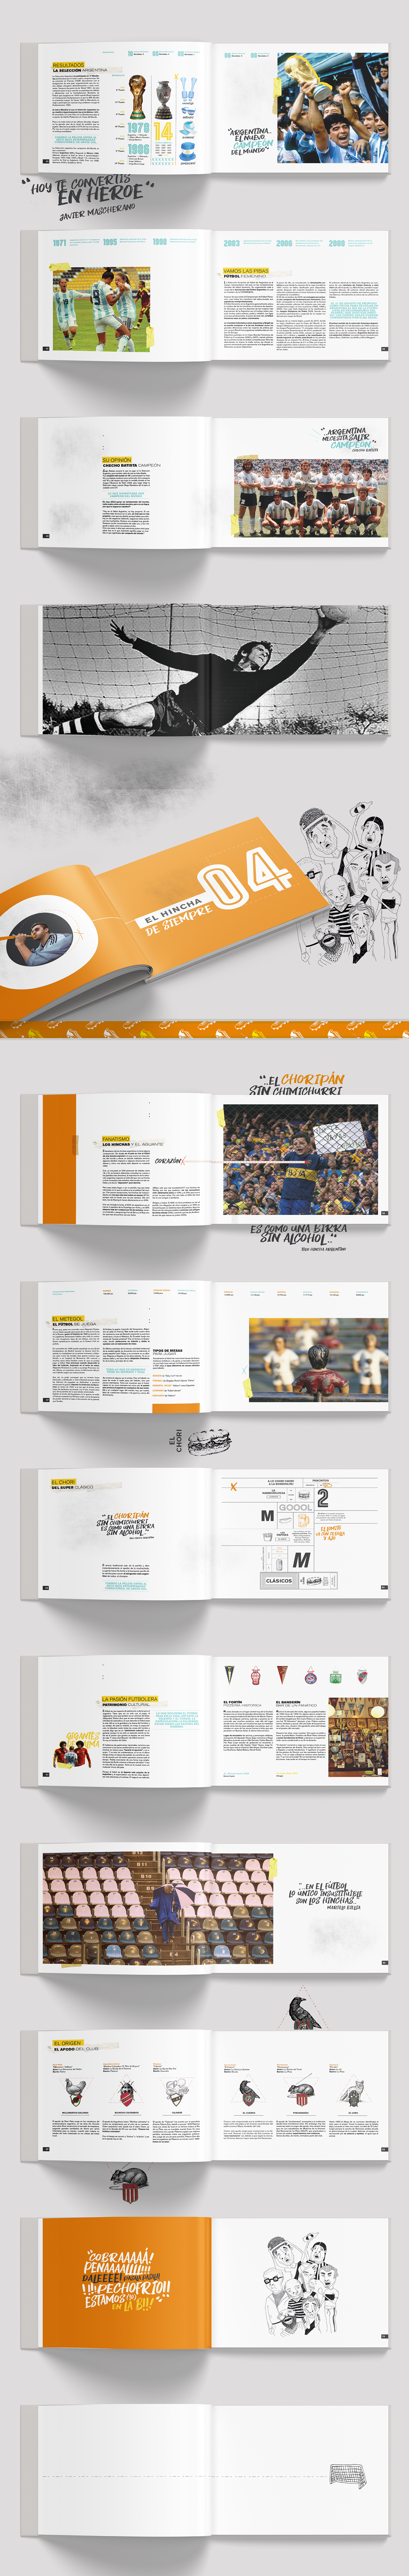 belluccia editorial libro diseño gráfico ilustracion diseño 3 fadu Futbol messi maradona